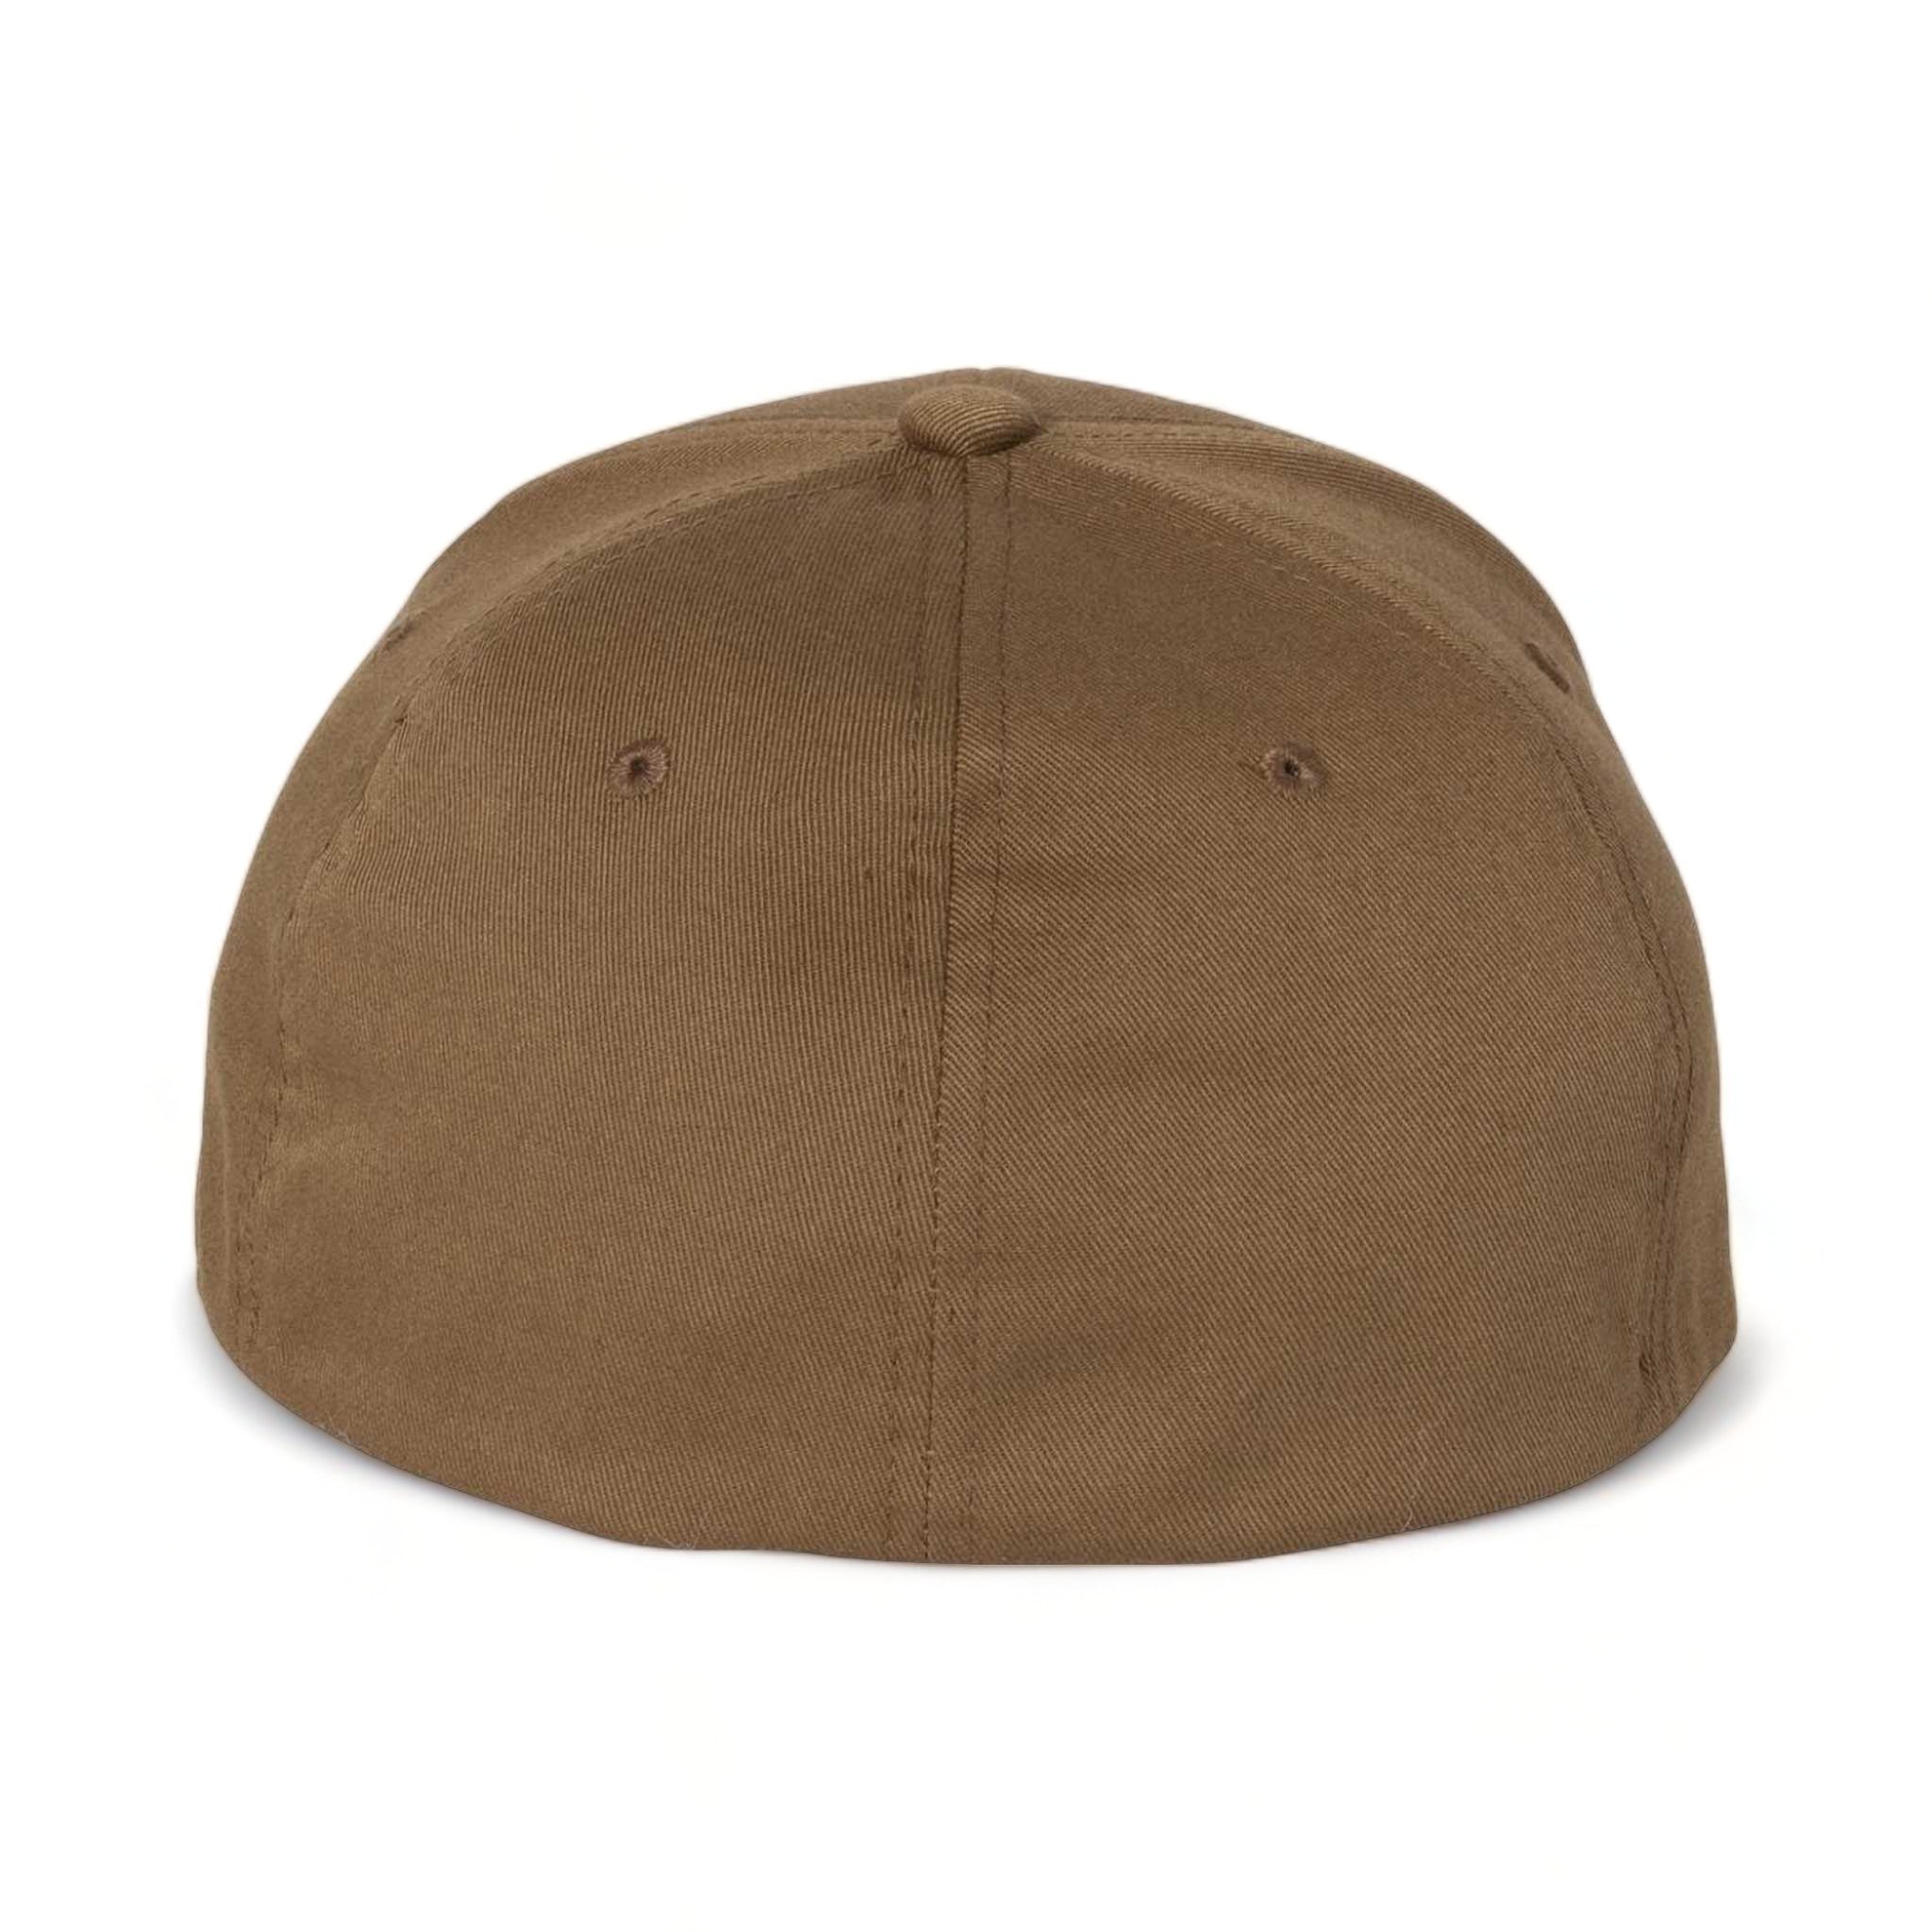 Back view of Flexfit 6277 custom hat in coyote brown